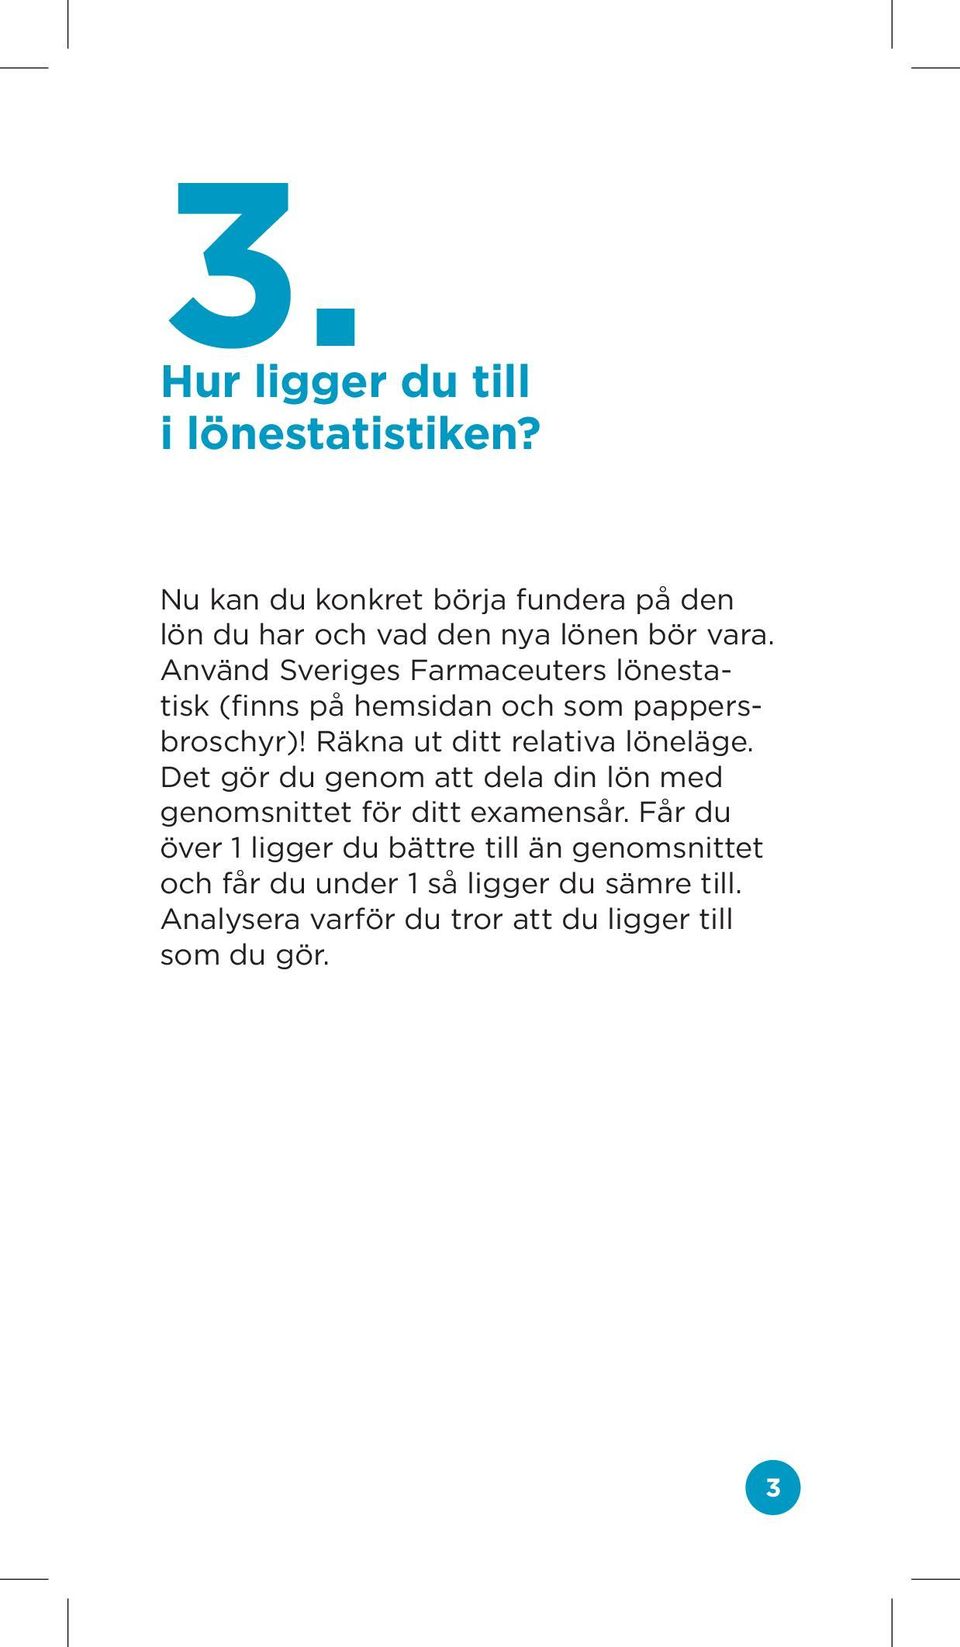 Använd Sveriges Farmaceuters lönestatisk (finns på hemsidan och som pappersbroschyr)!